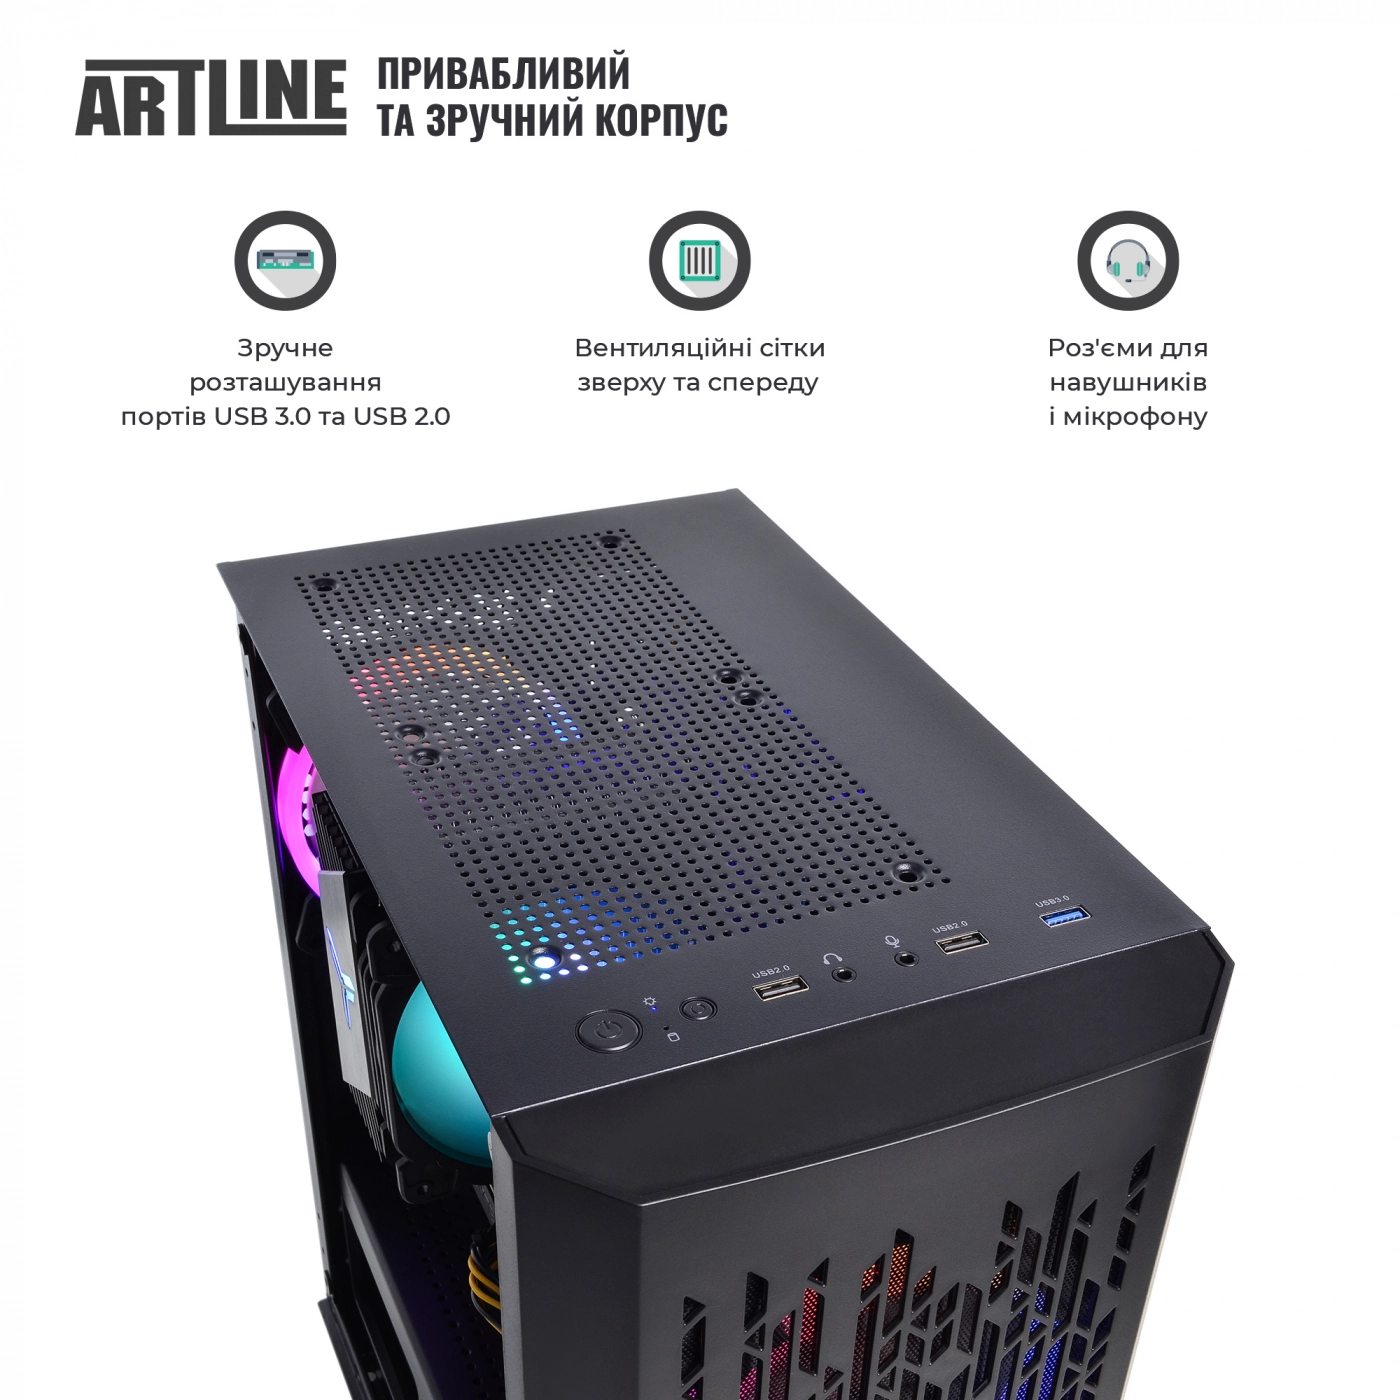 Купить Компьютер ARTLINE Gaming X71v32 - фото 5